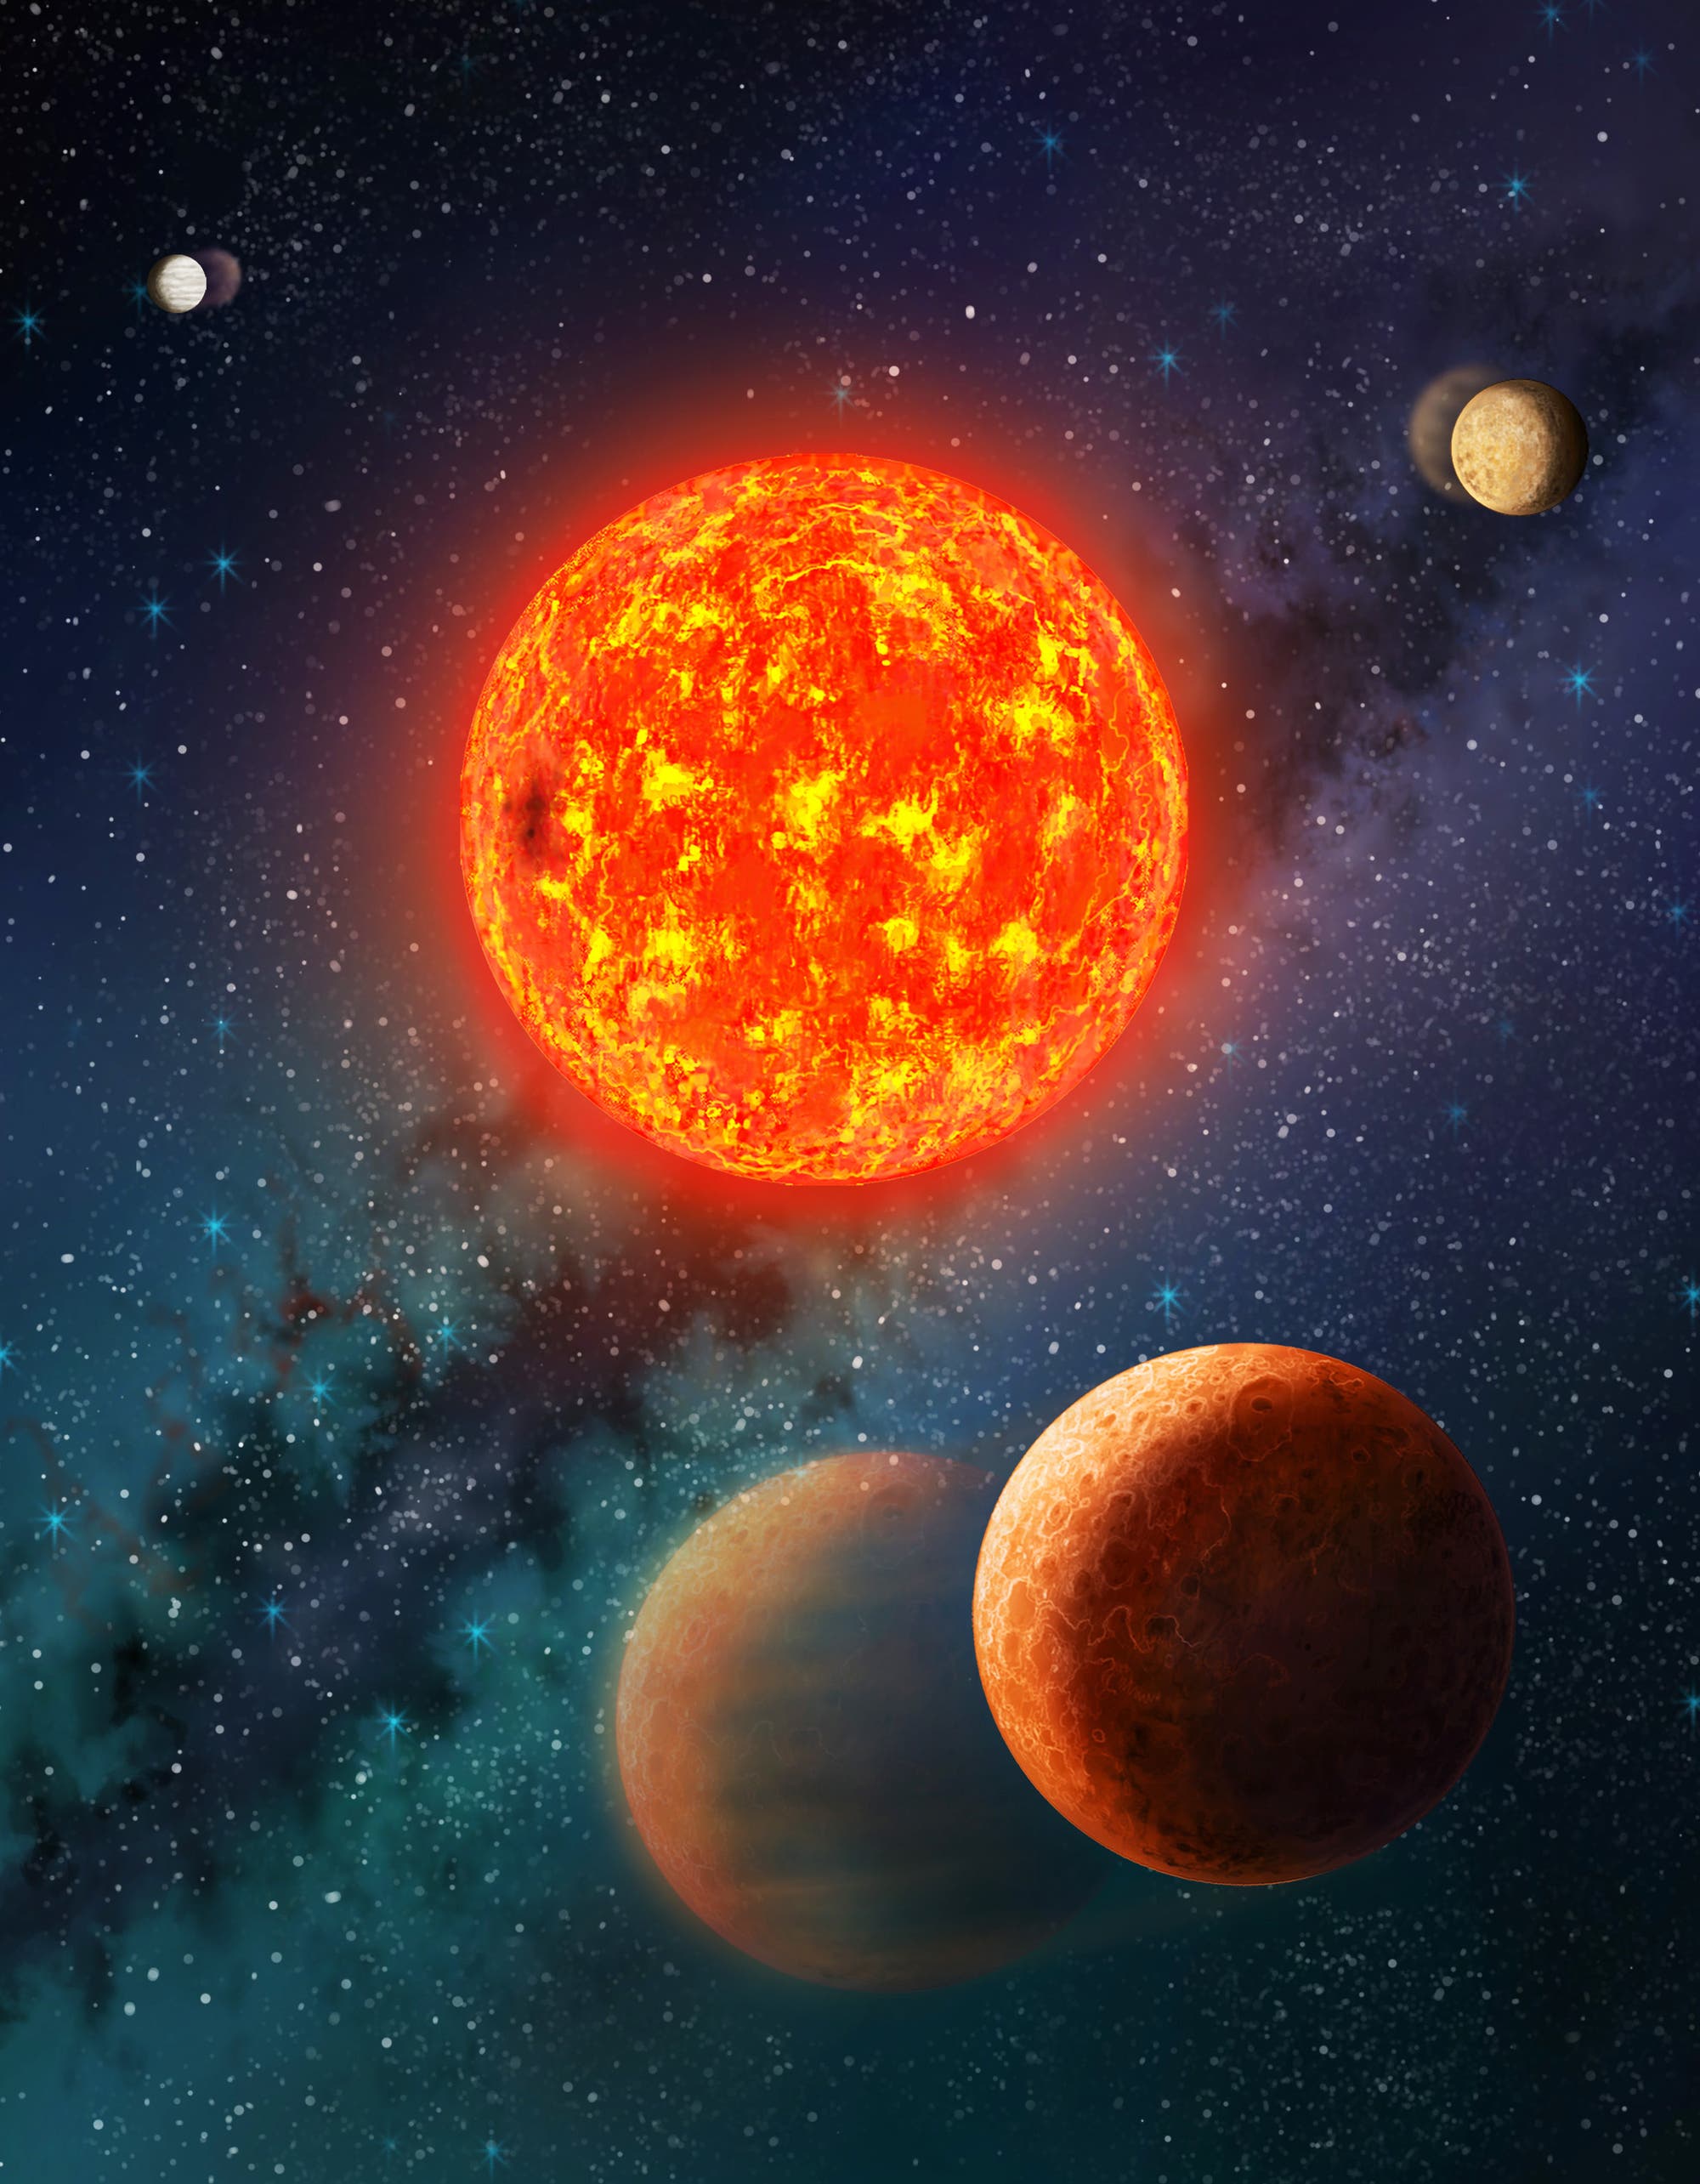 Das System Kepler-138 (künstlerische Darstellung)